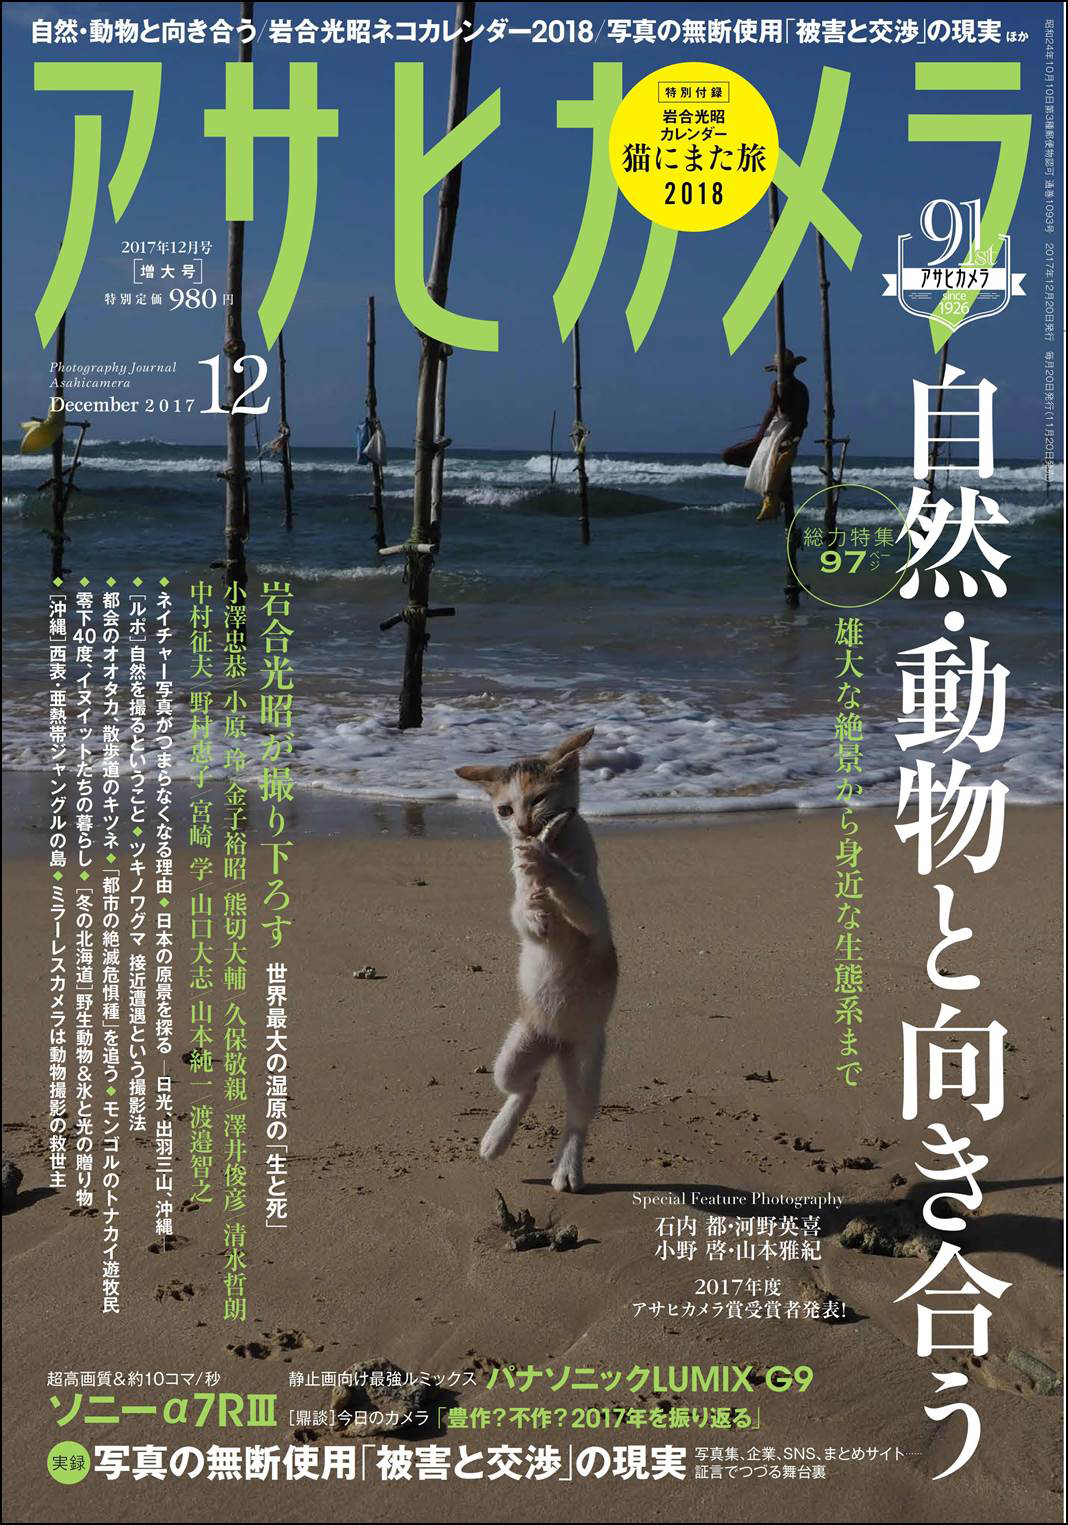 アサヒカメラ12月号表紙。表紙の写真も岩合光昭さん撮影の猫です